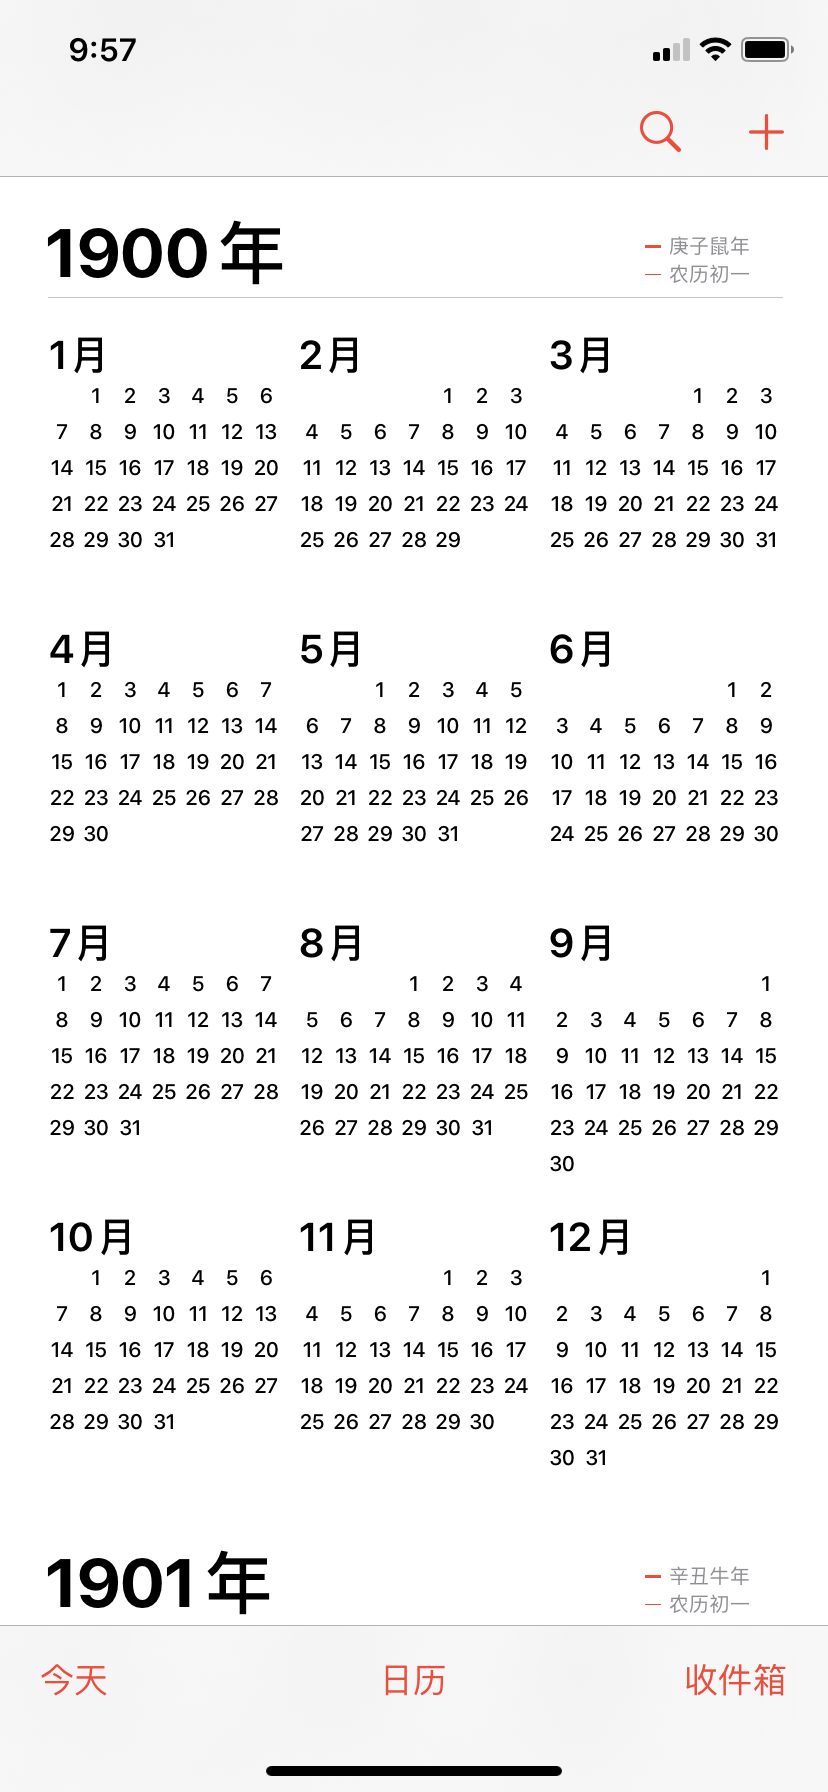 日历缩略图中的闰年